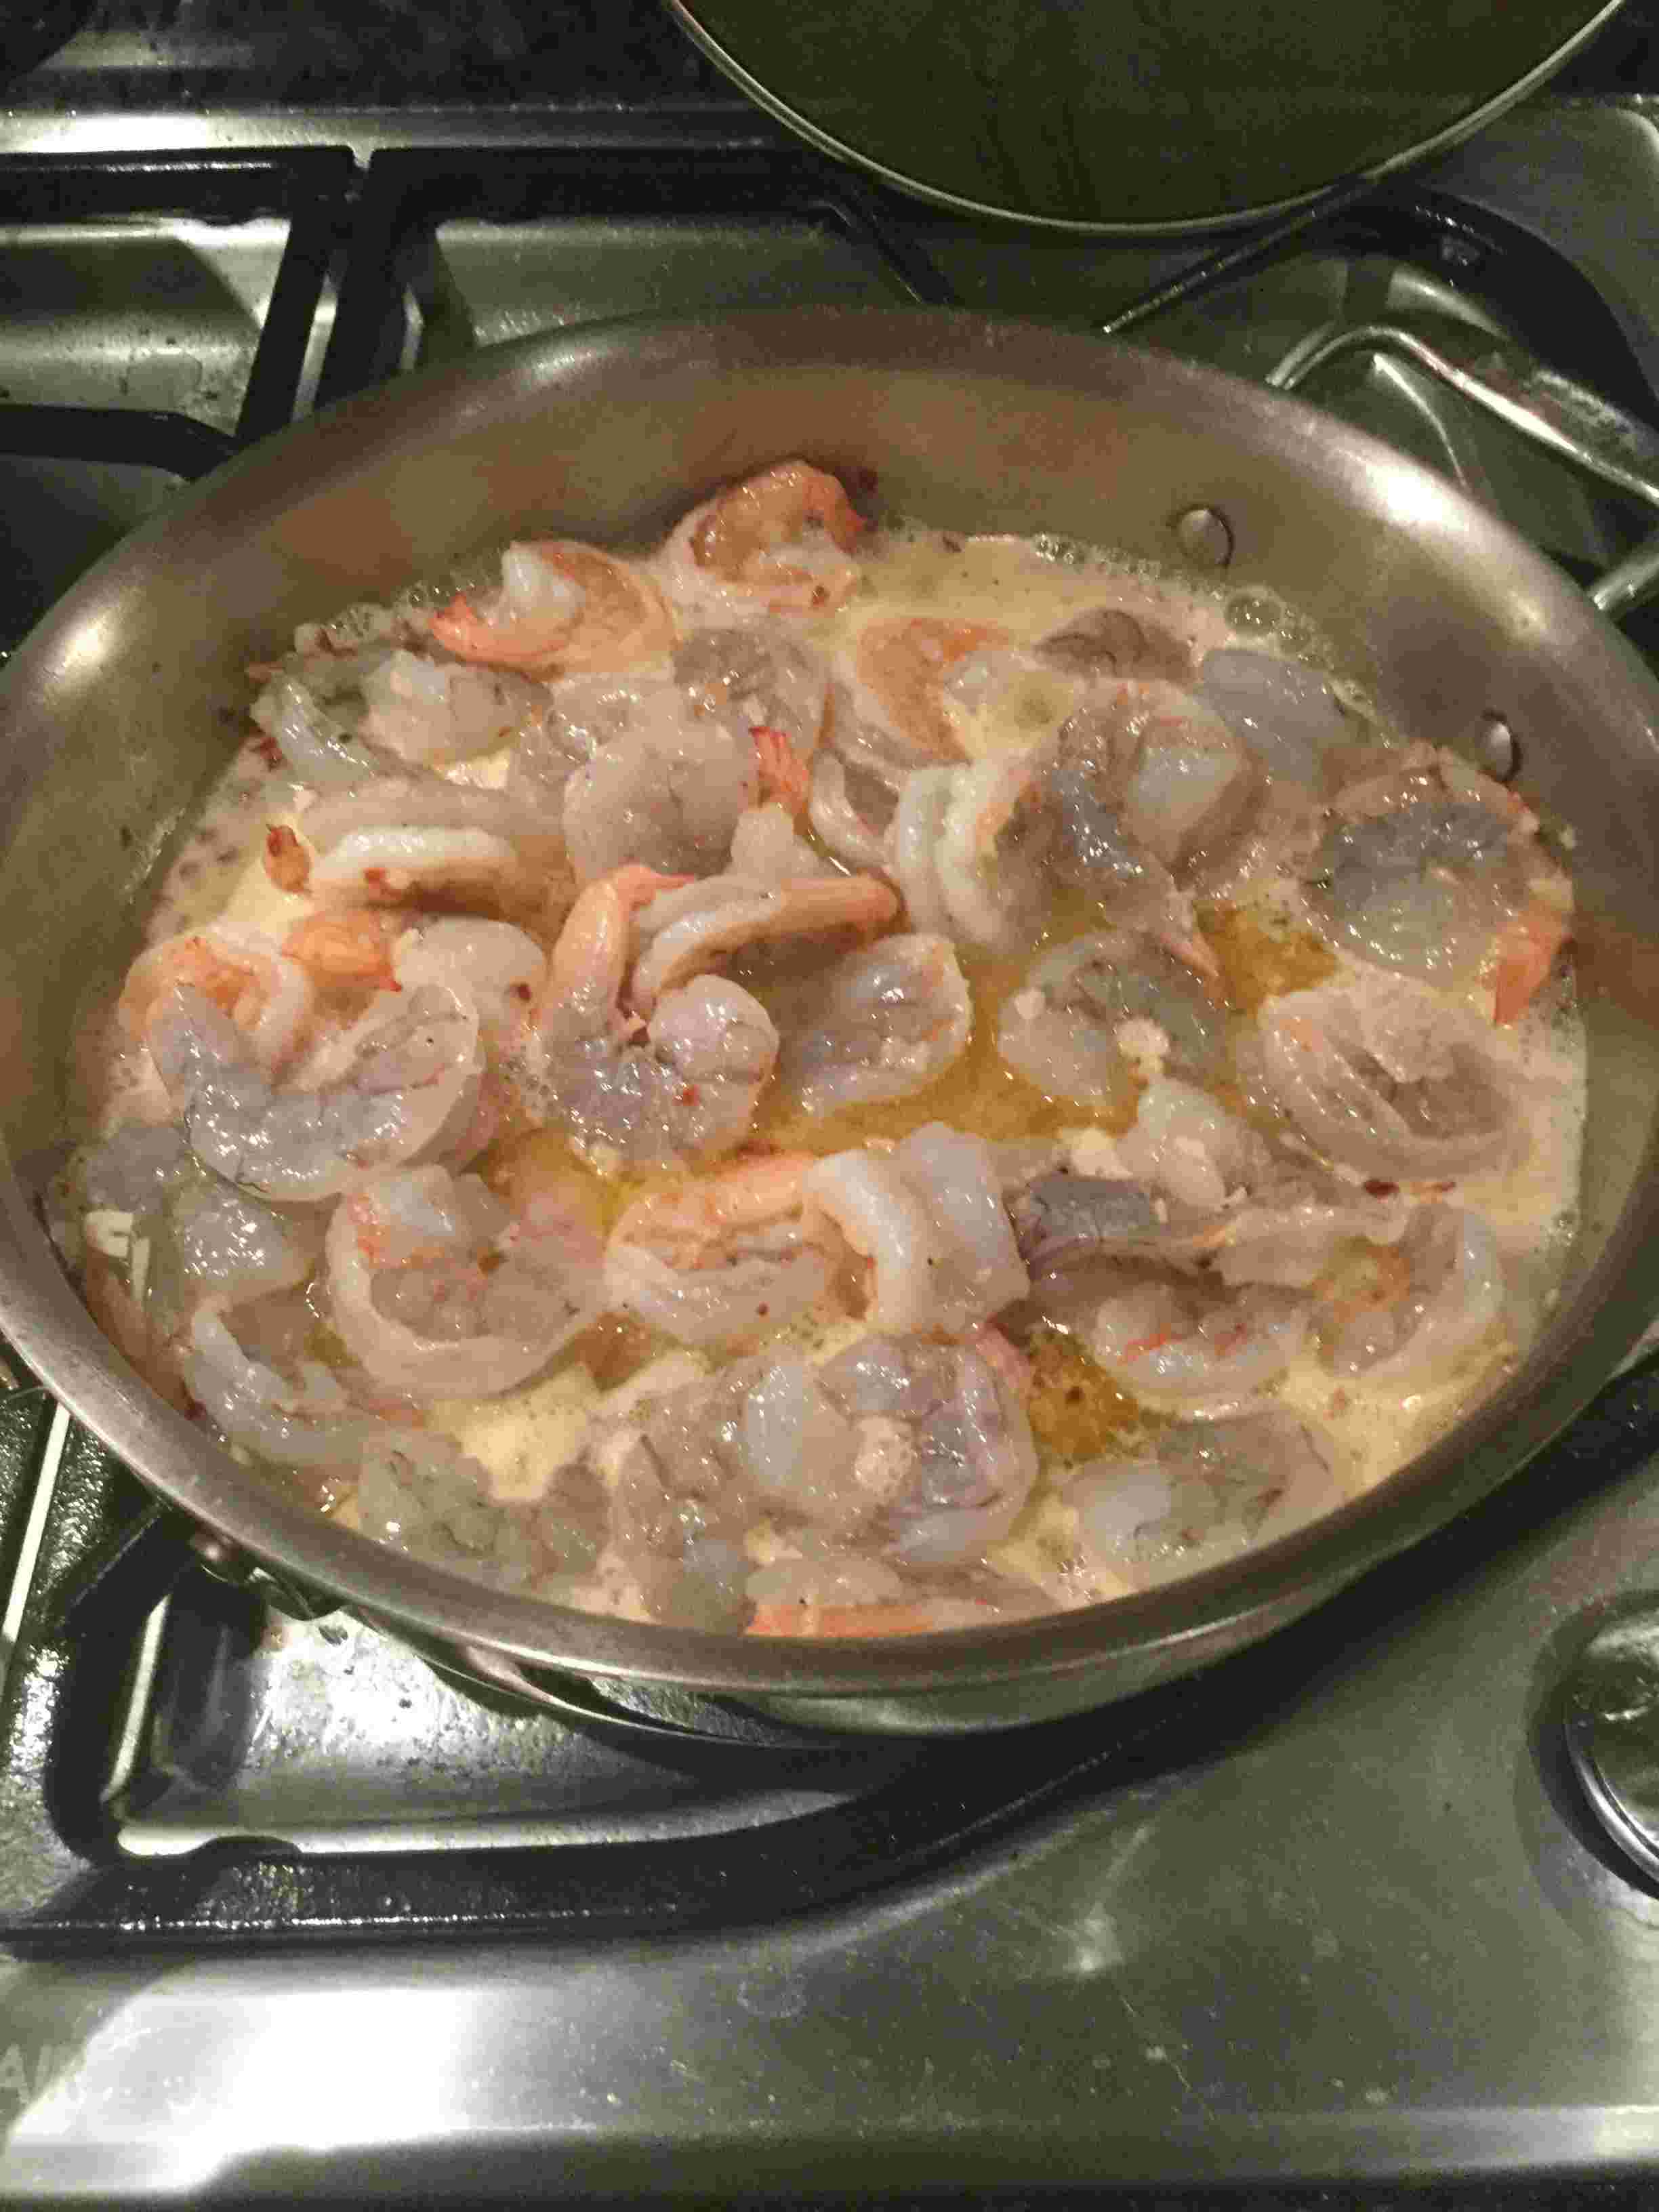 Adding the shrimp